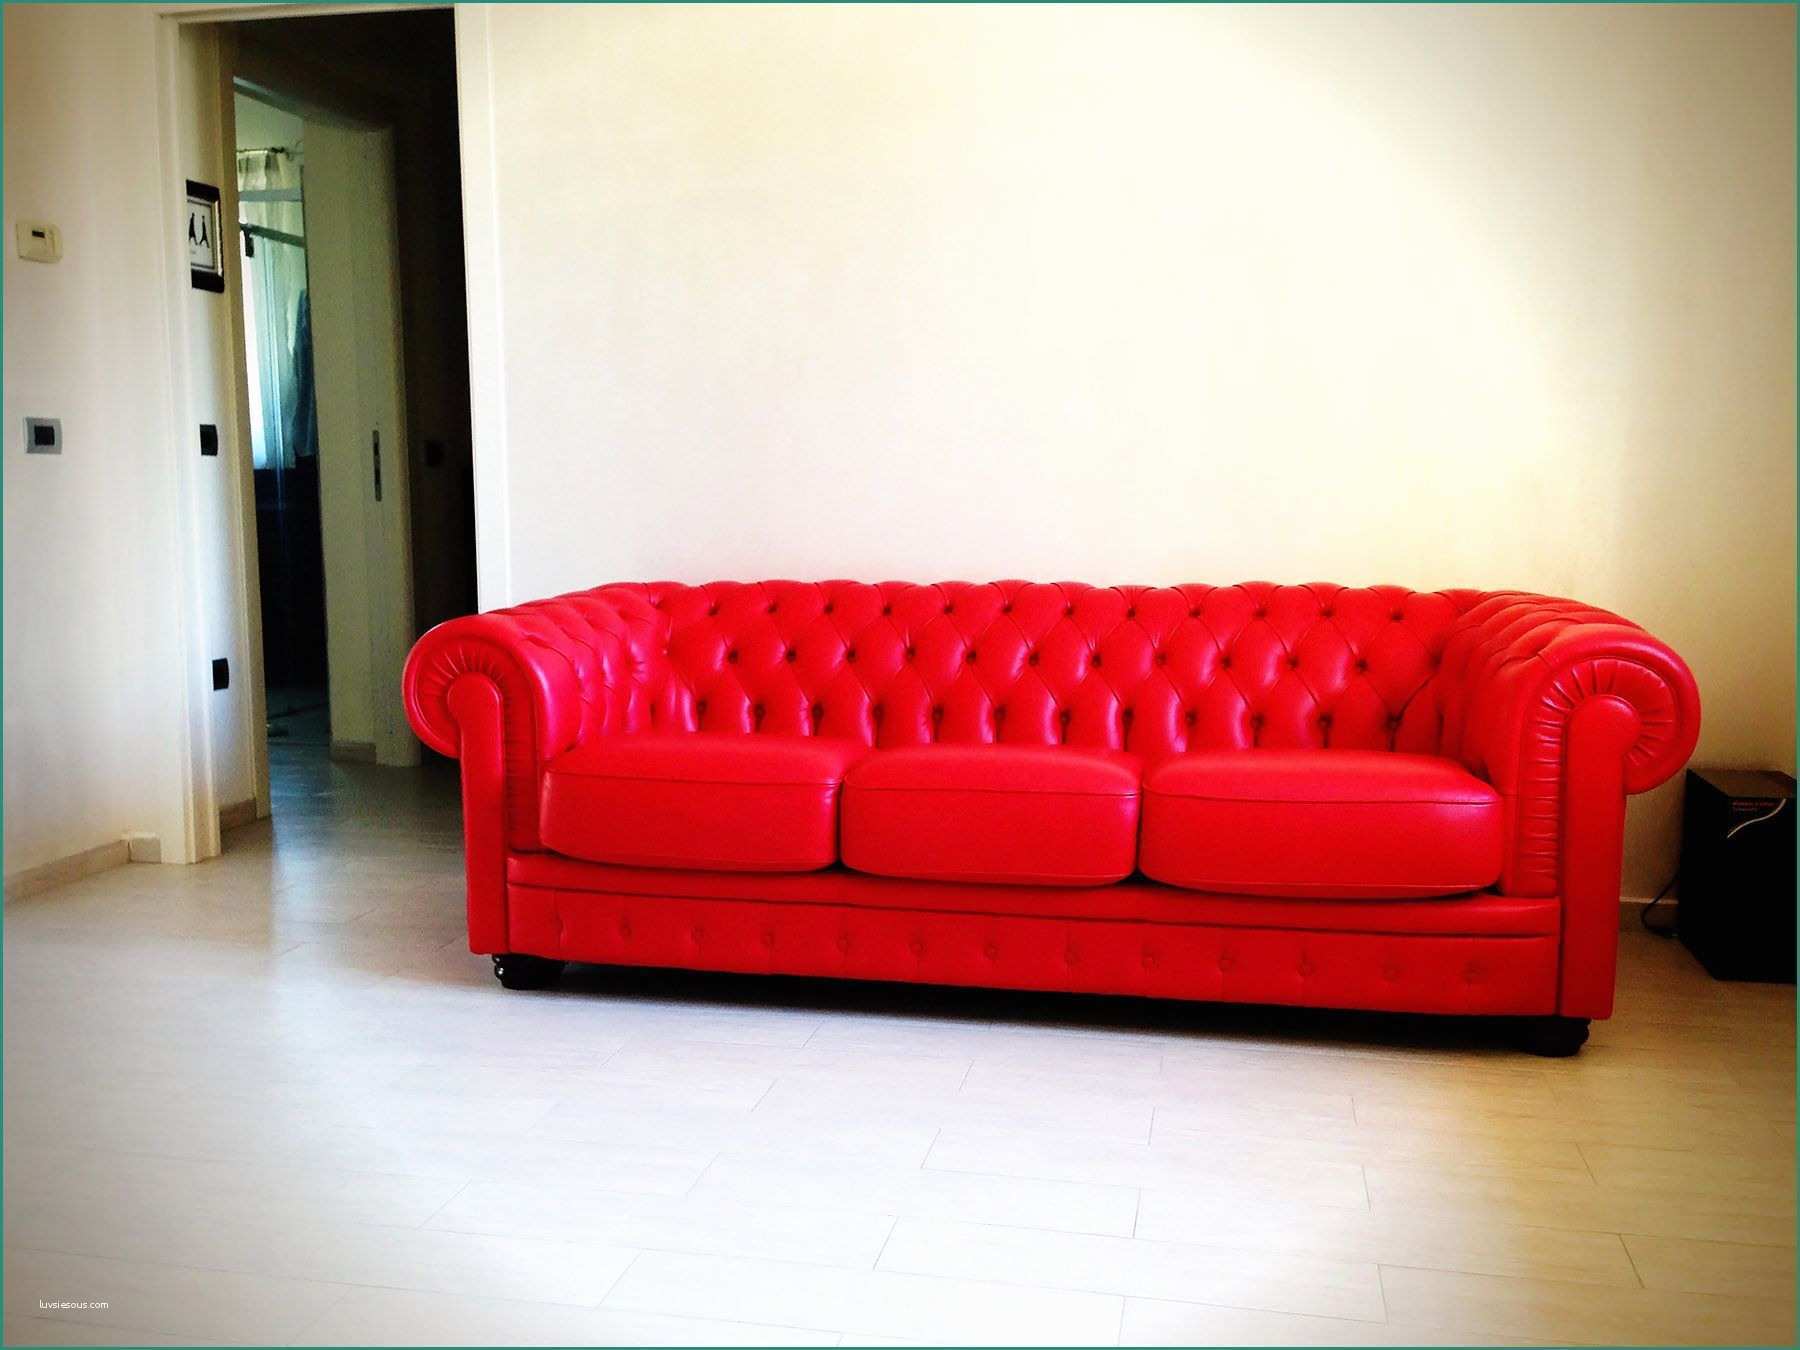 Il Salotto Reggio Emilia E Tanghetti Divani House solutions Pinterest Furniture Upholstery